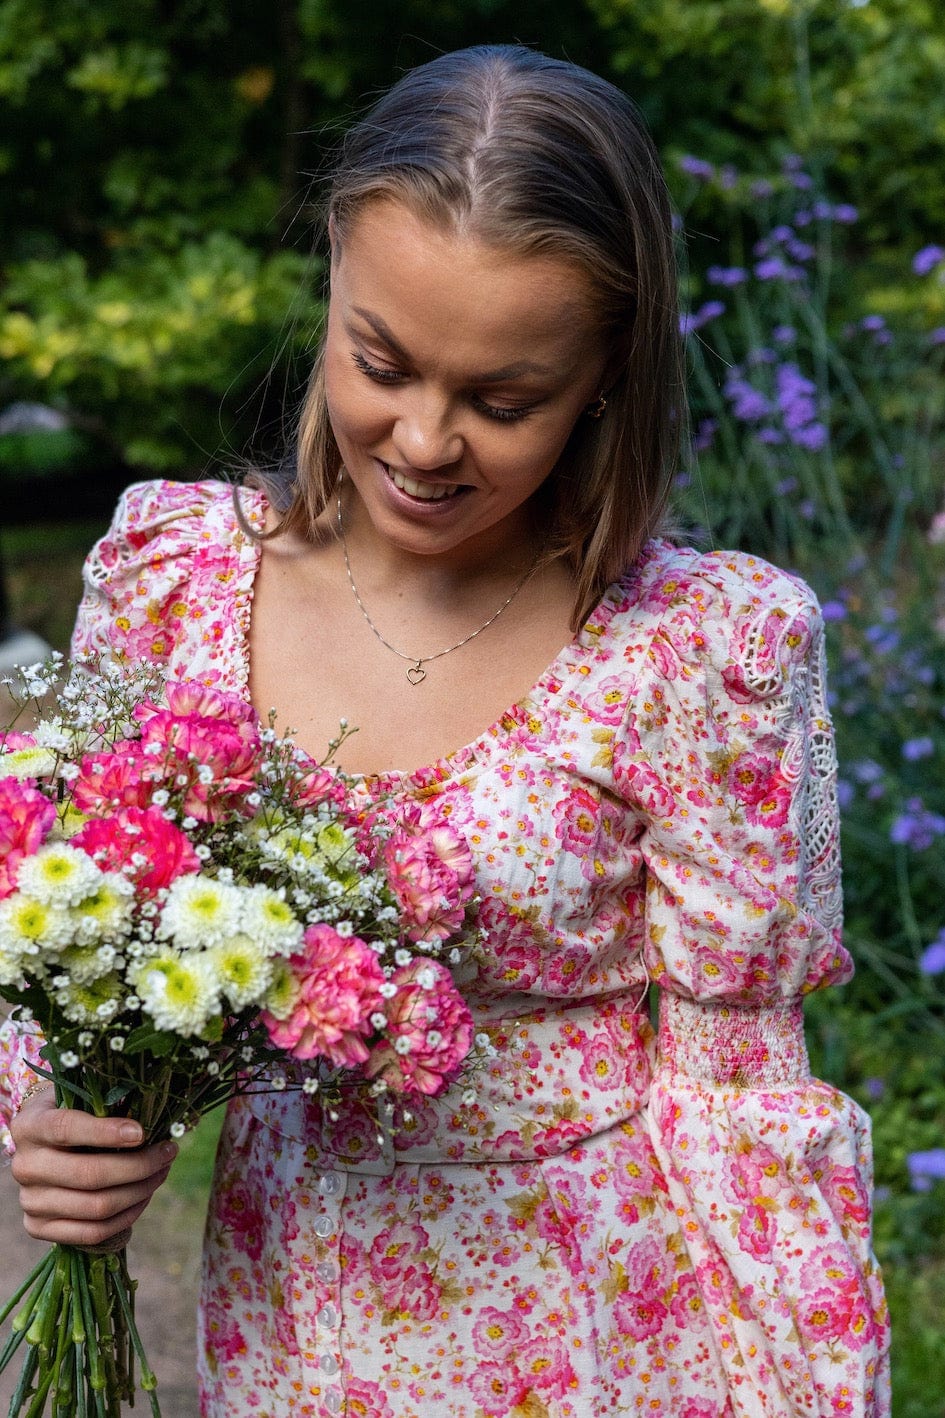 Linen Maxi Dress Pink Flowers | Kjoler | Smuk - Dameklær på nett